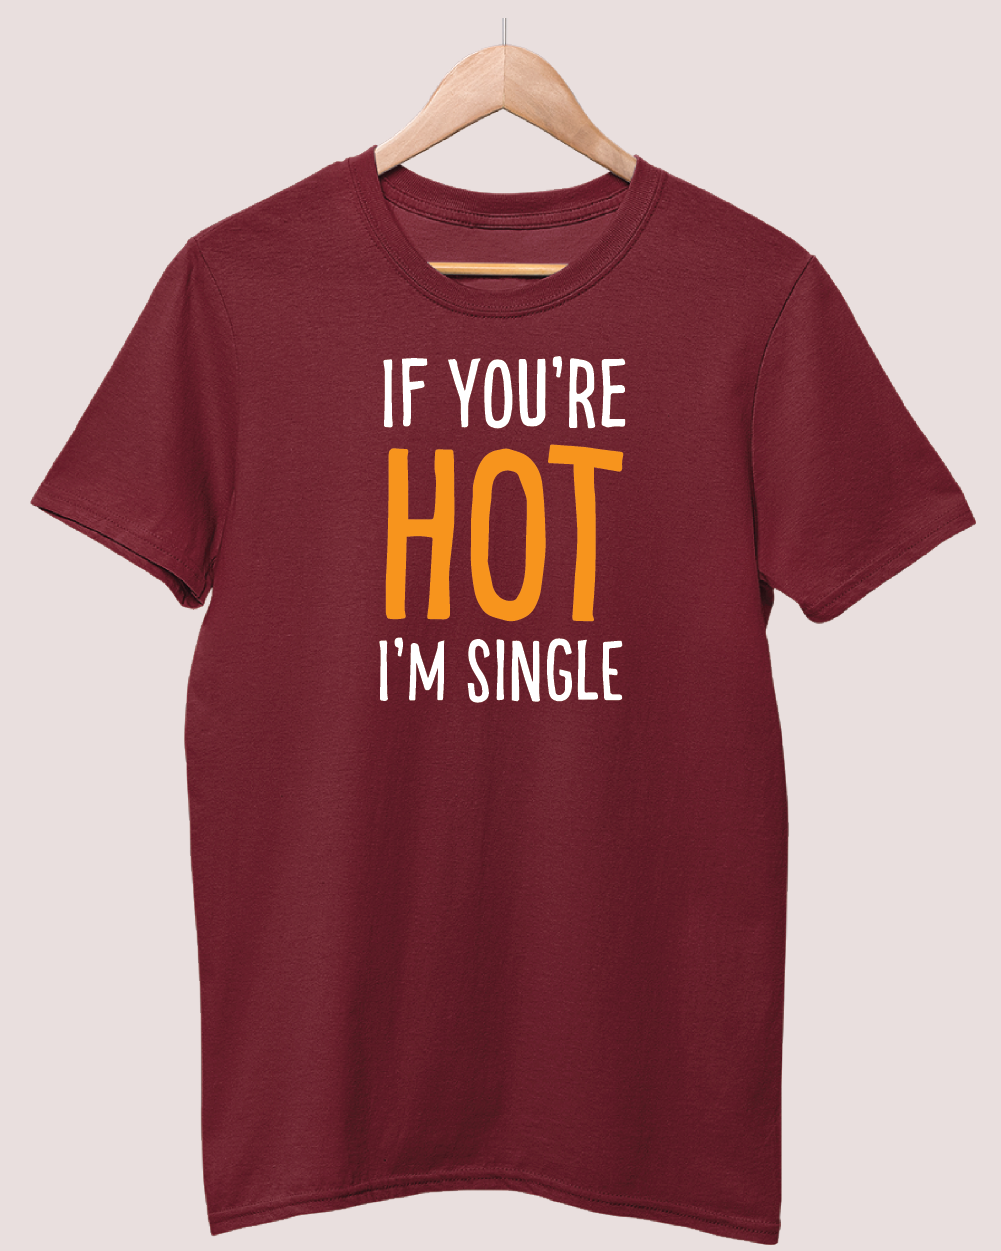 If you're Hot I'm Single t-shirt